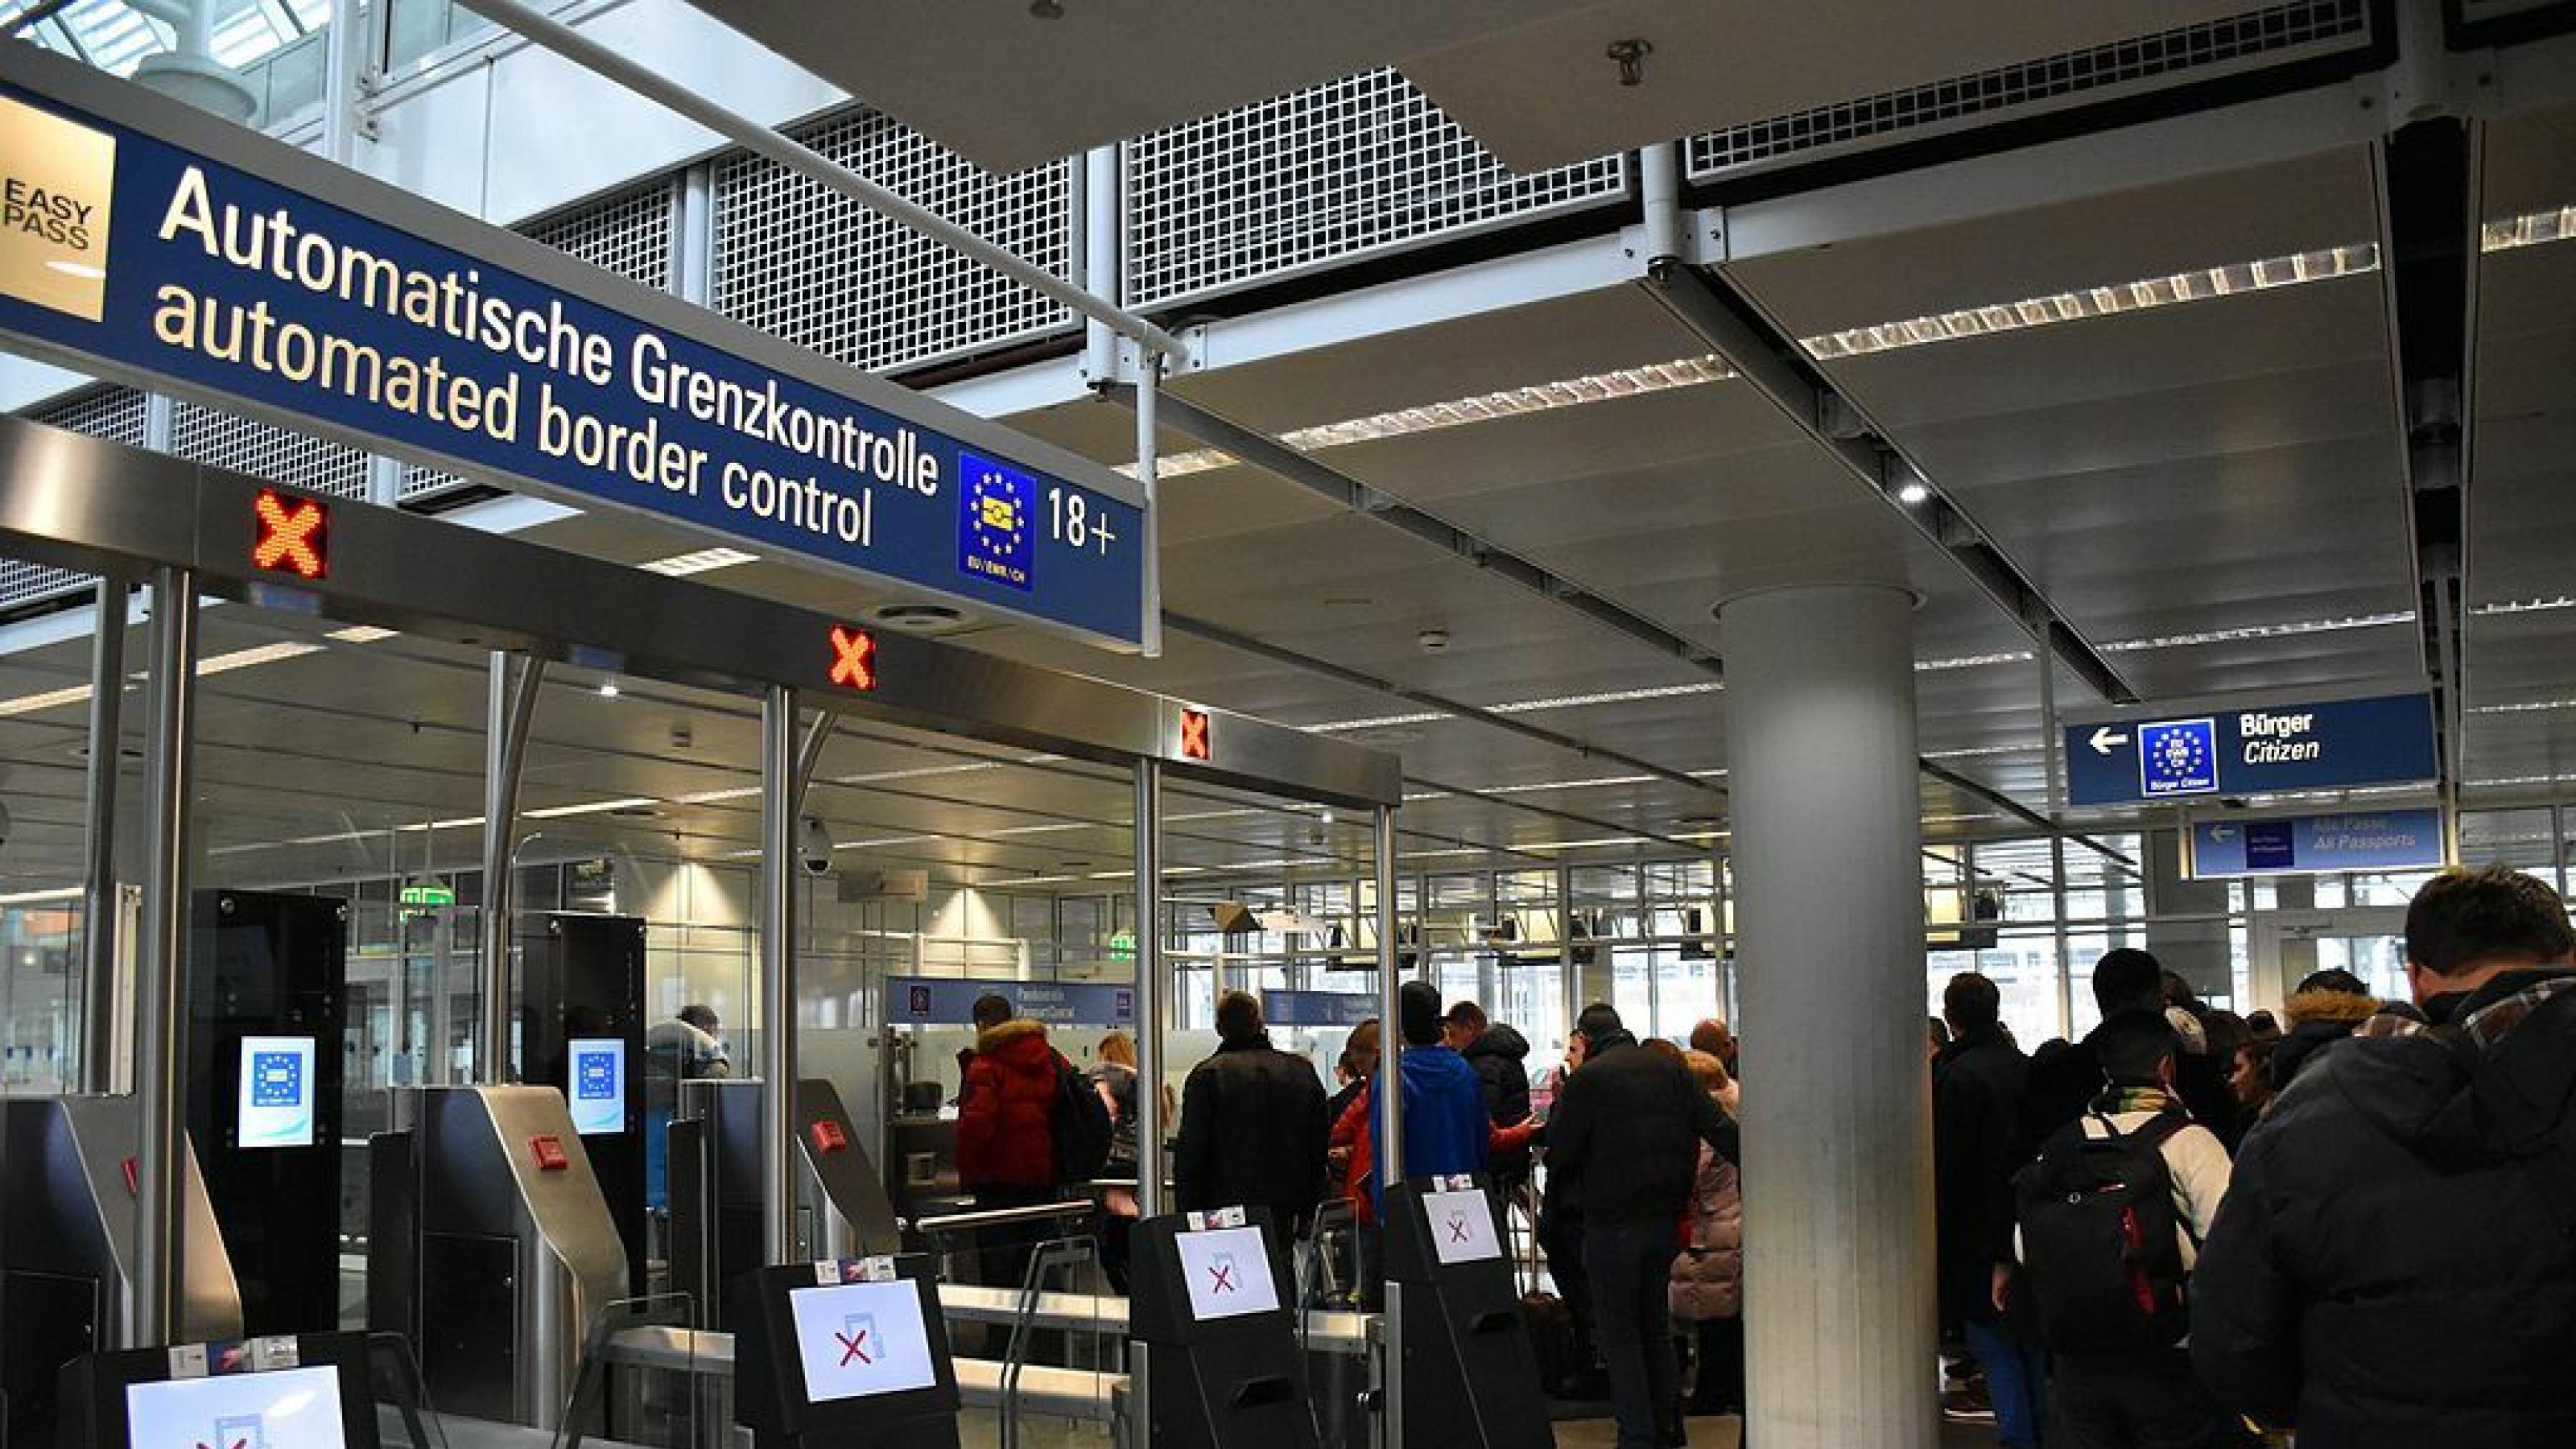 Menschen stehen am Flughafen an einer Passkontrolle in der Schlange.  Im Vordergrund sind leere Schalter für eine automatische Grenzkontrolle zu sehen.